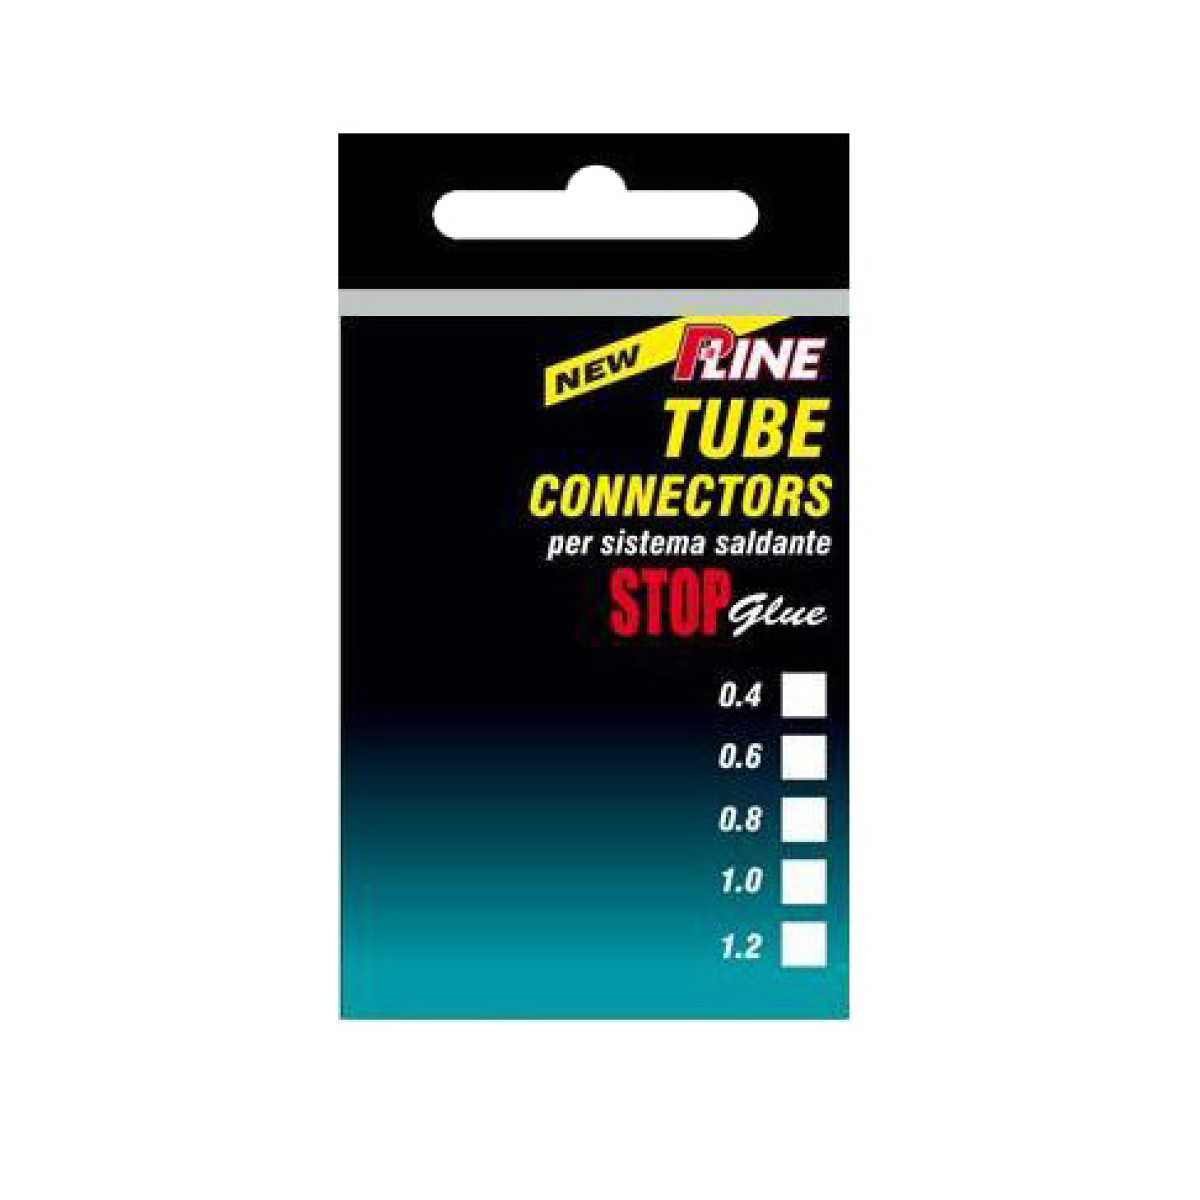 P-LINE TUBE CONNECTORS